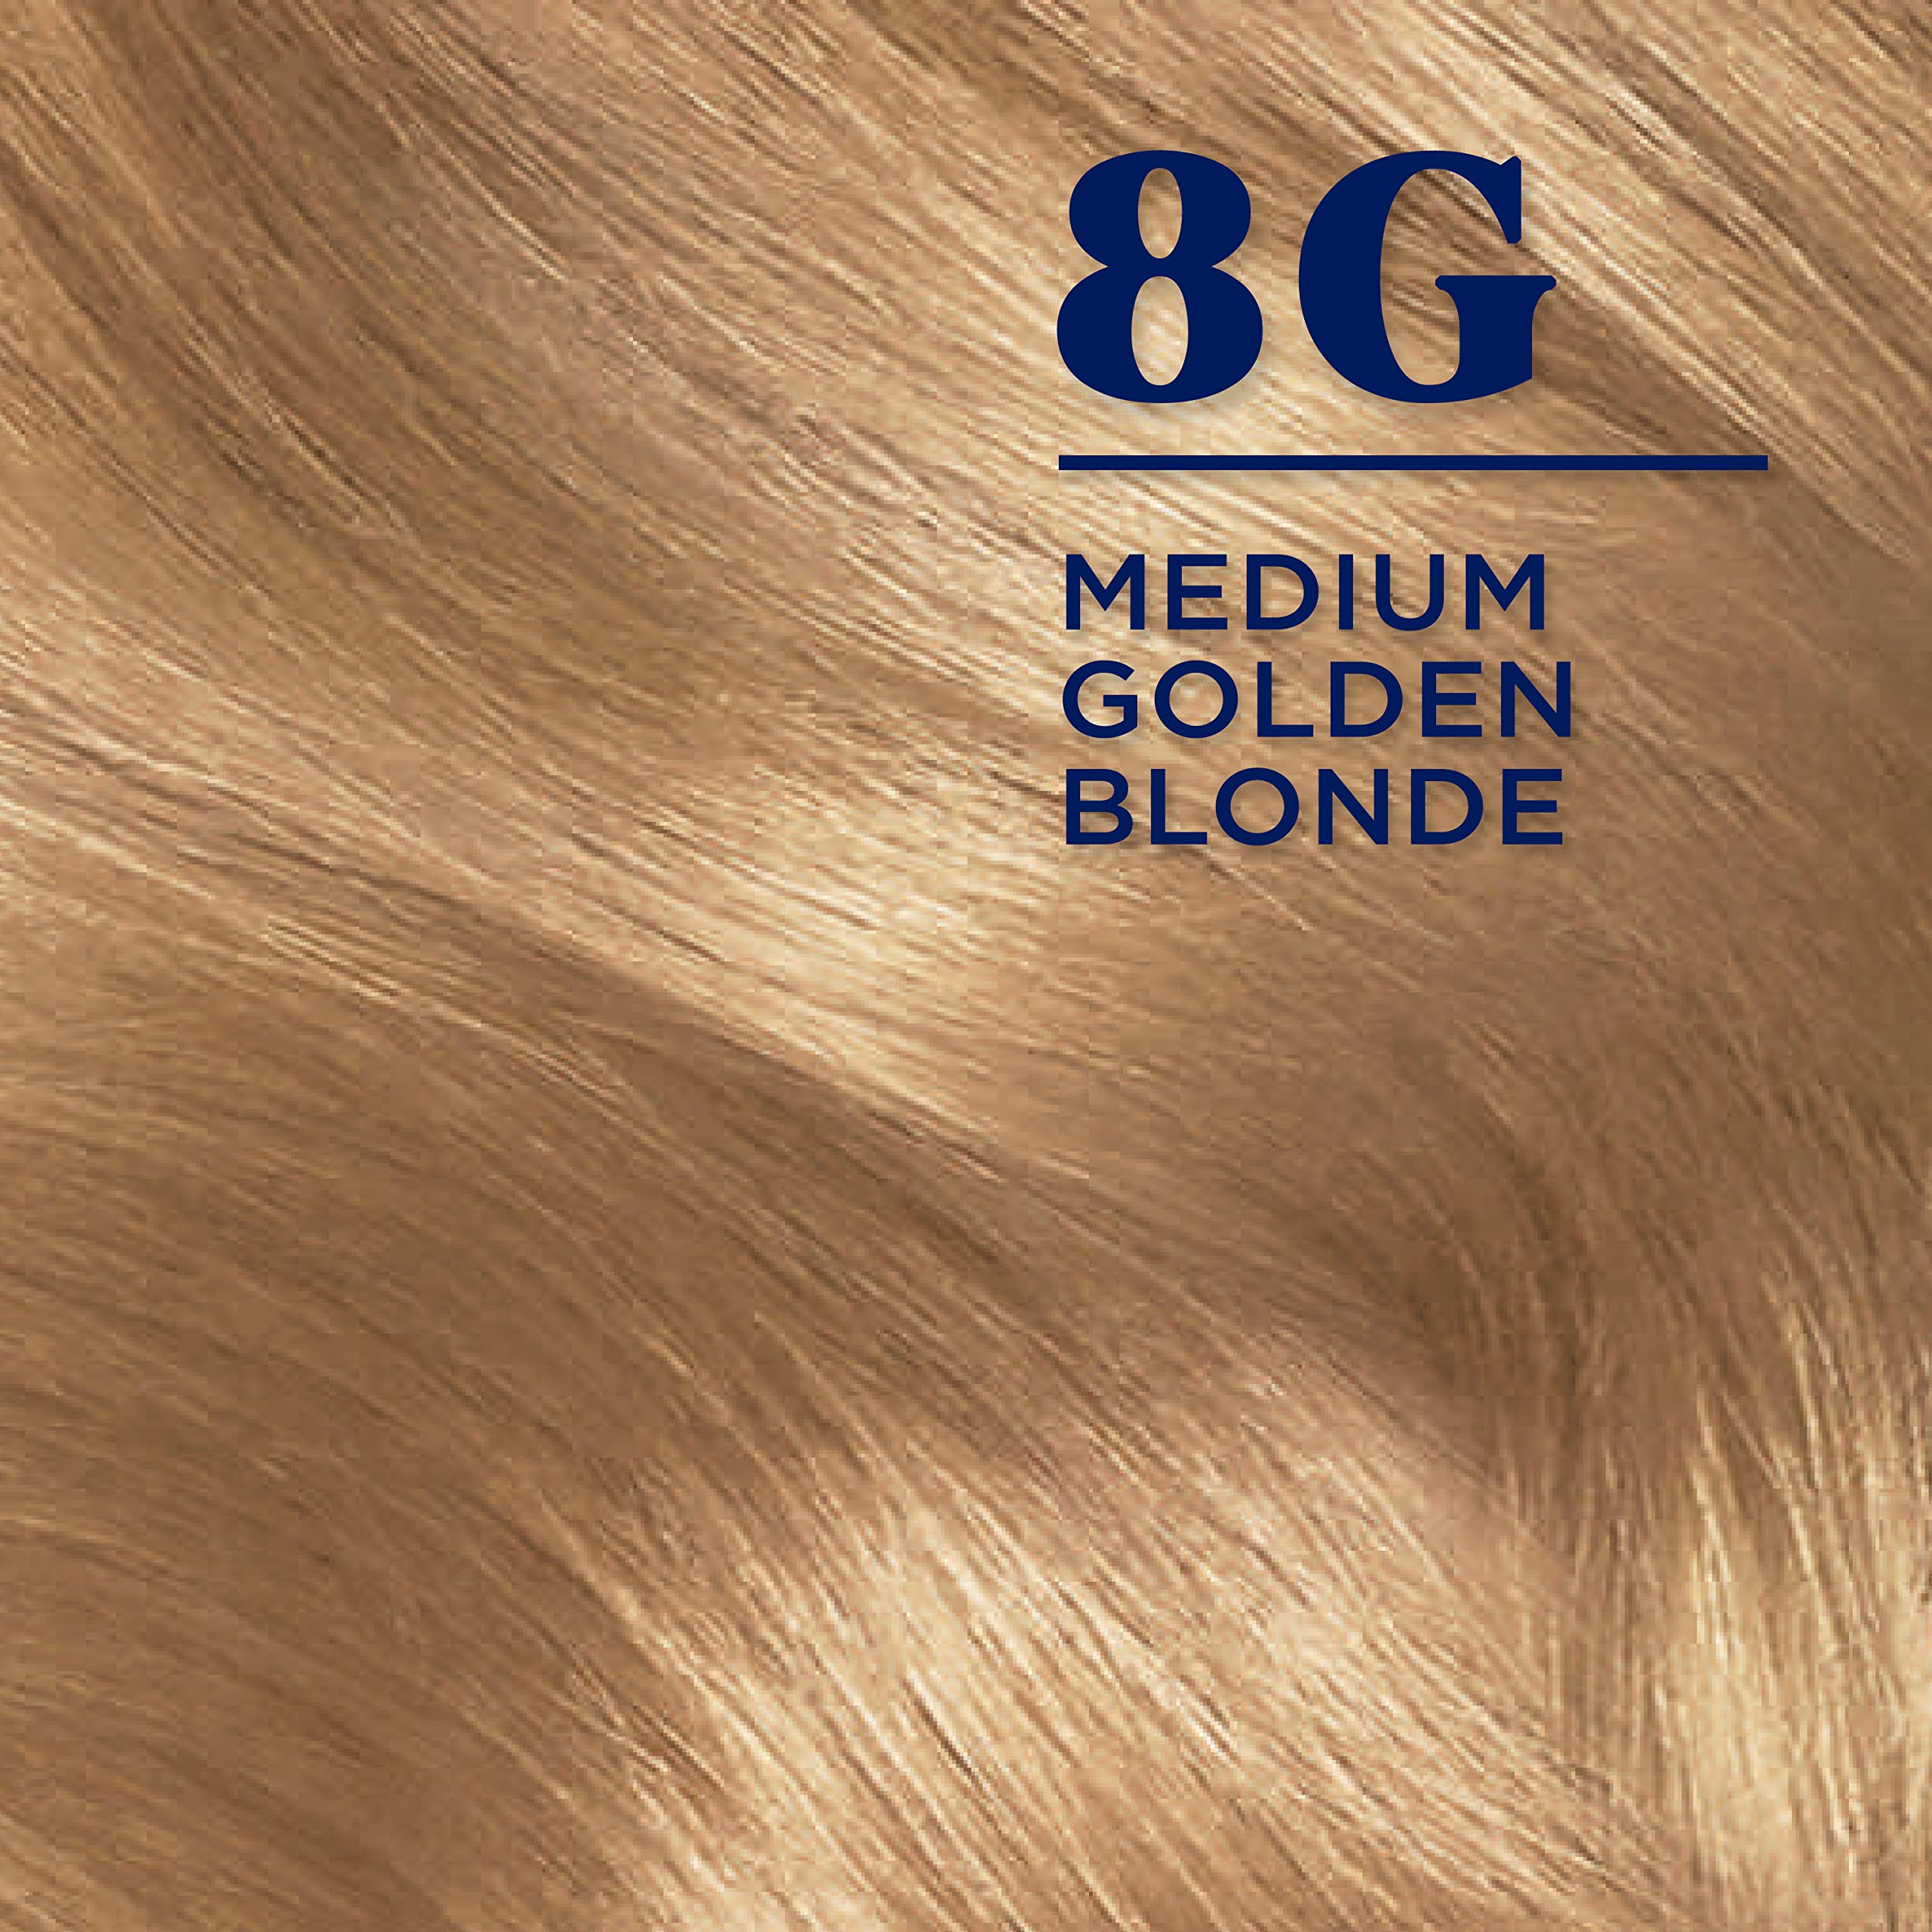 Clairol Nice'n Easy Permanent Hair Dye, 8G Medium Golden Blonde Hair Color, Pack of 1